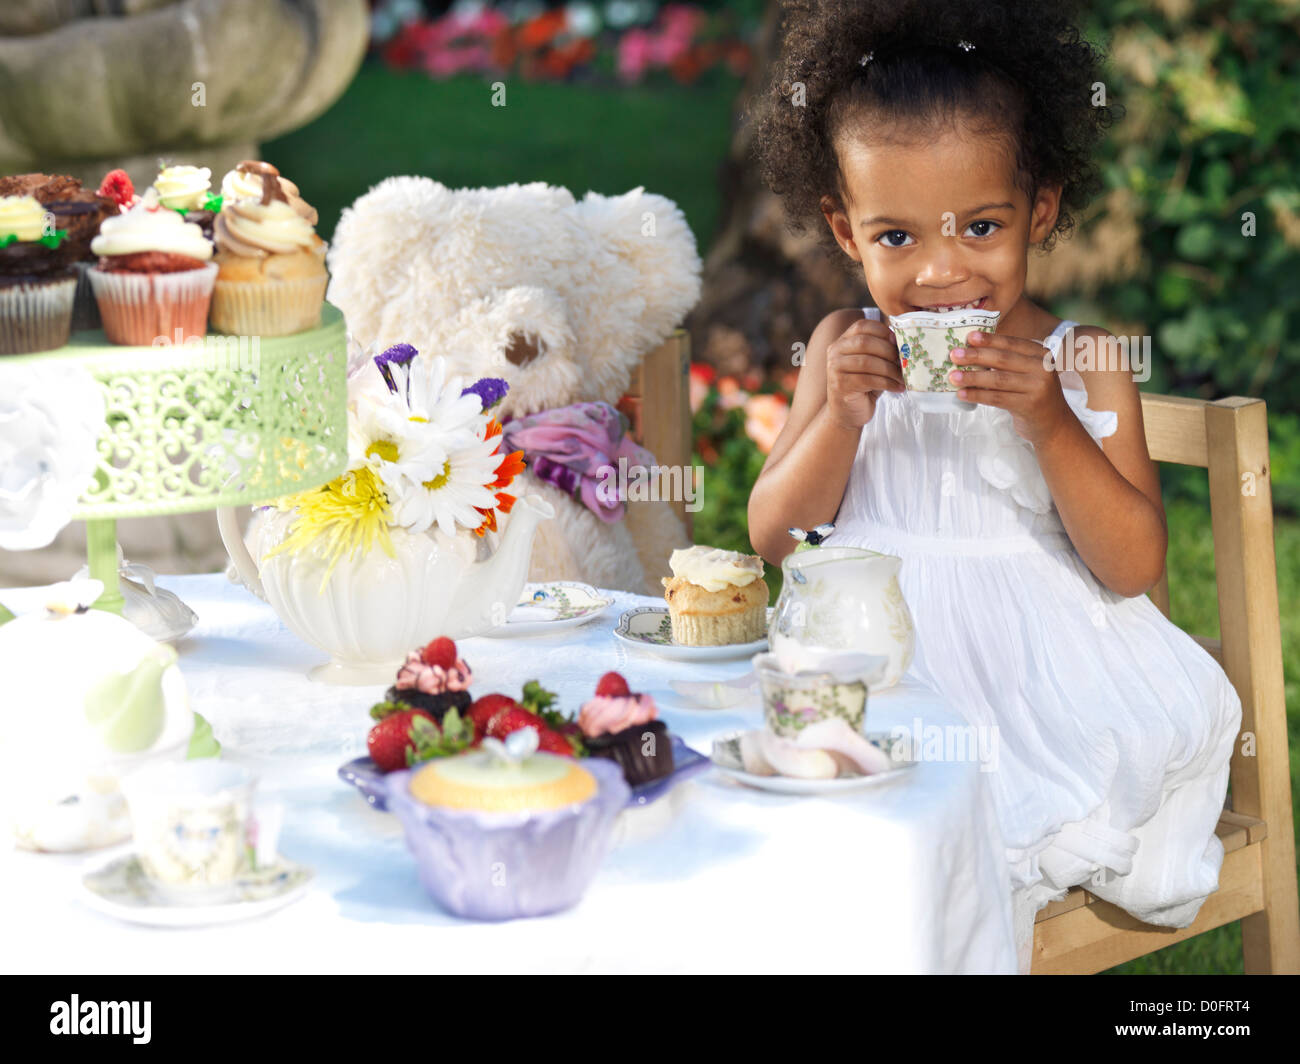 Licenza disponibile a MaximImages.com - ragazza sorridente felice che ha una festa estiva all'aperto. Bere tè con cupcake. Foto Stock